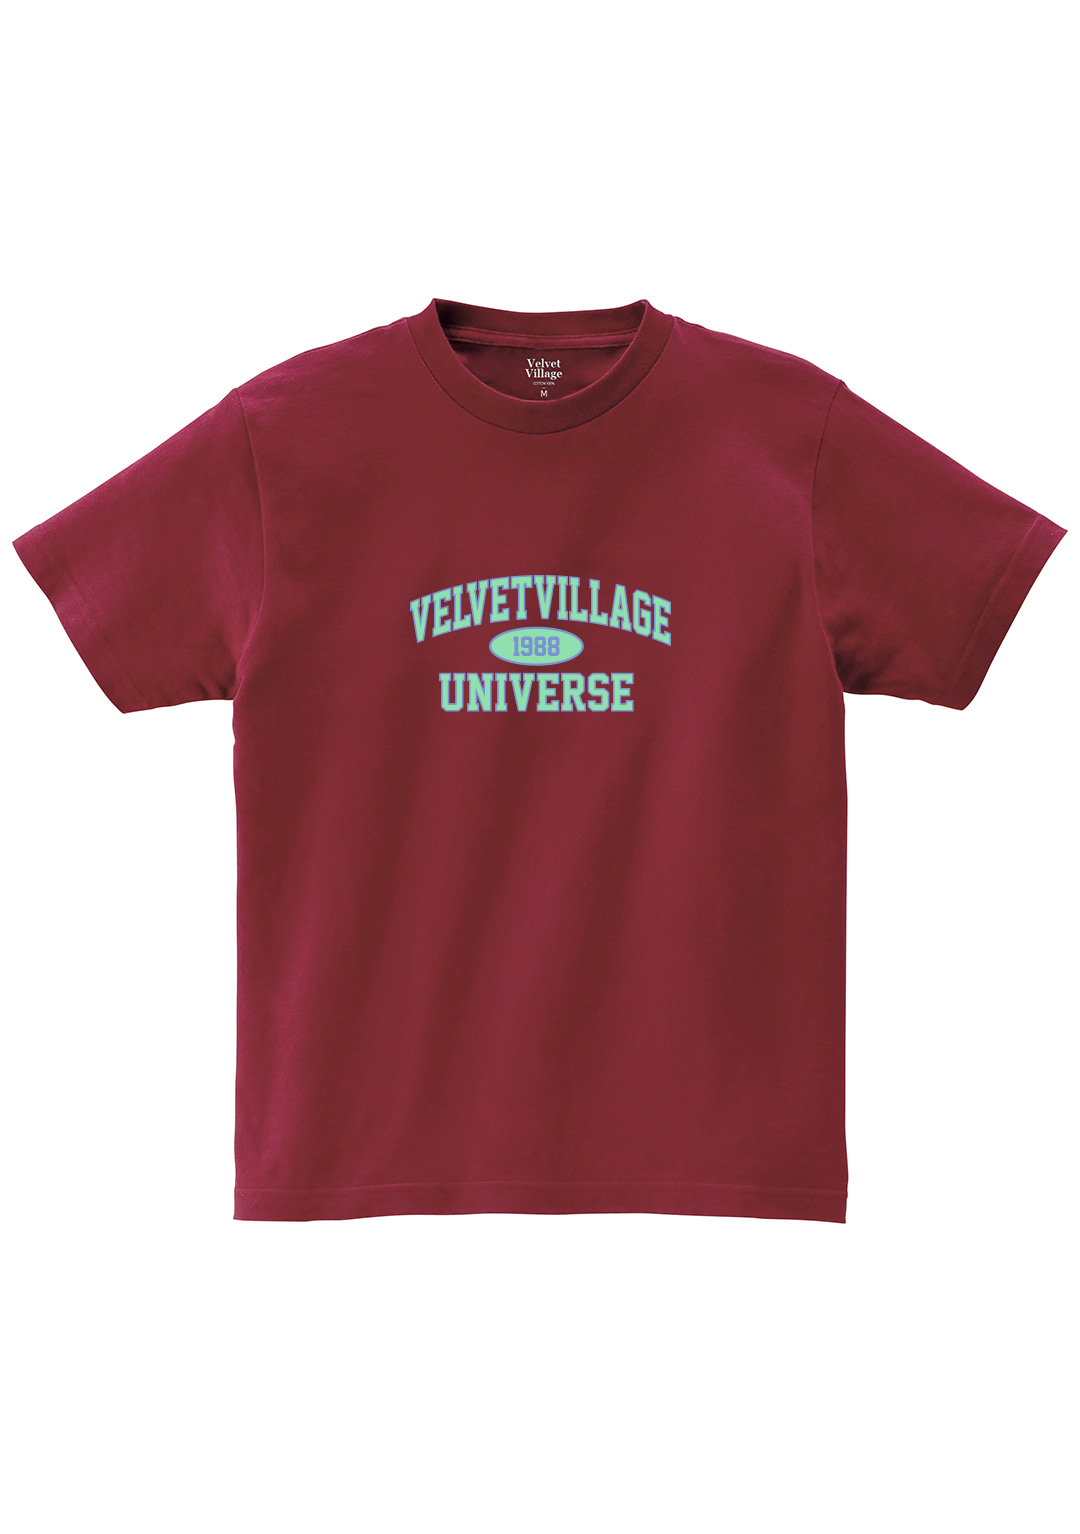 Universe T-shirt (Wine)